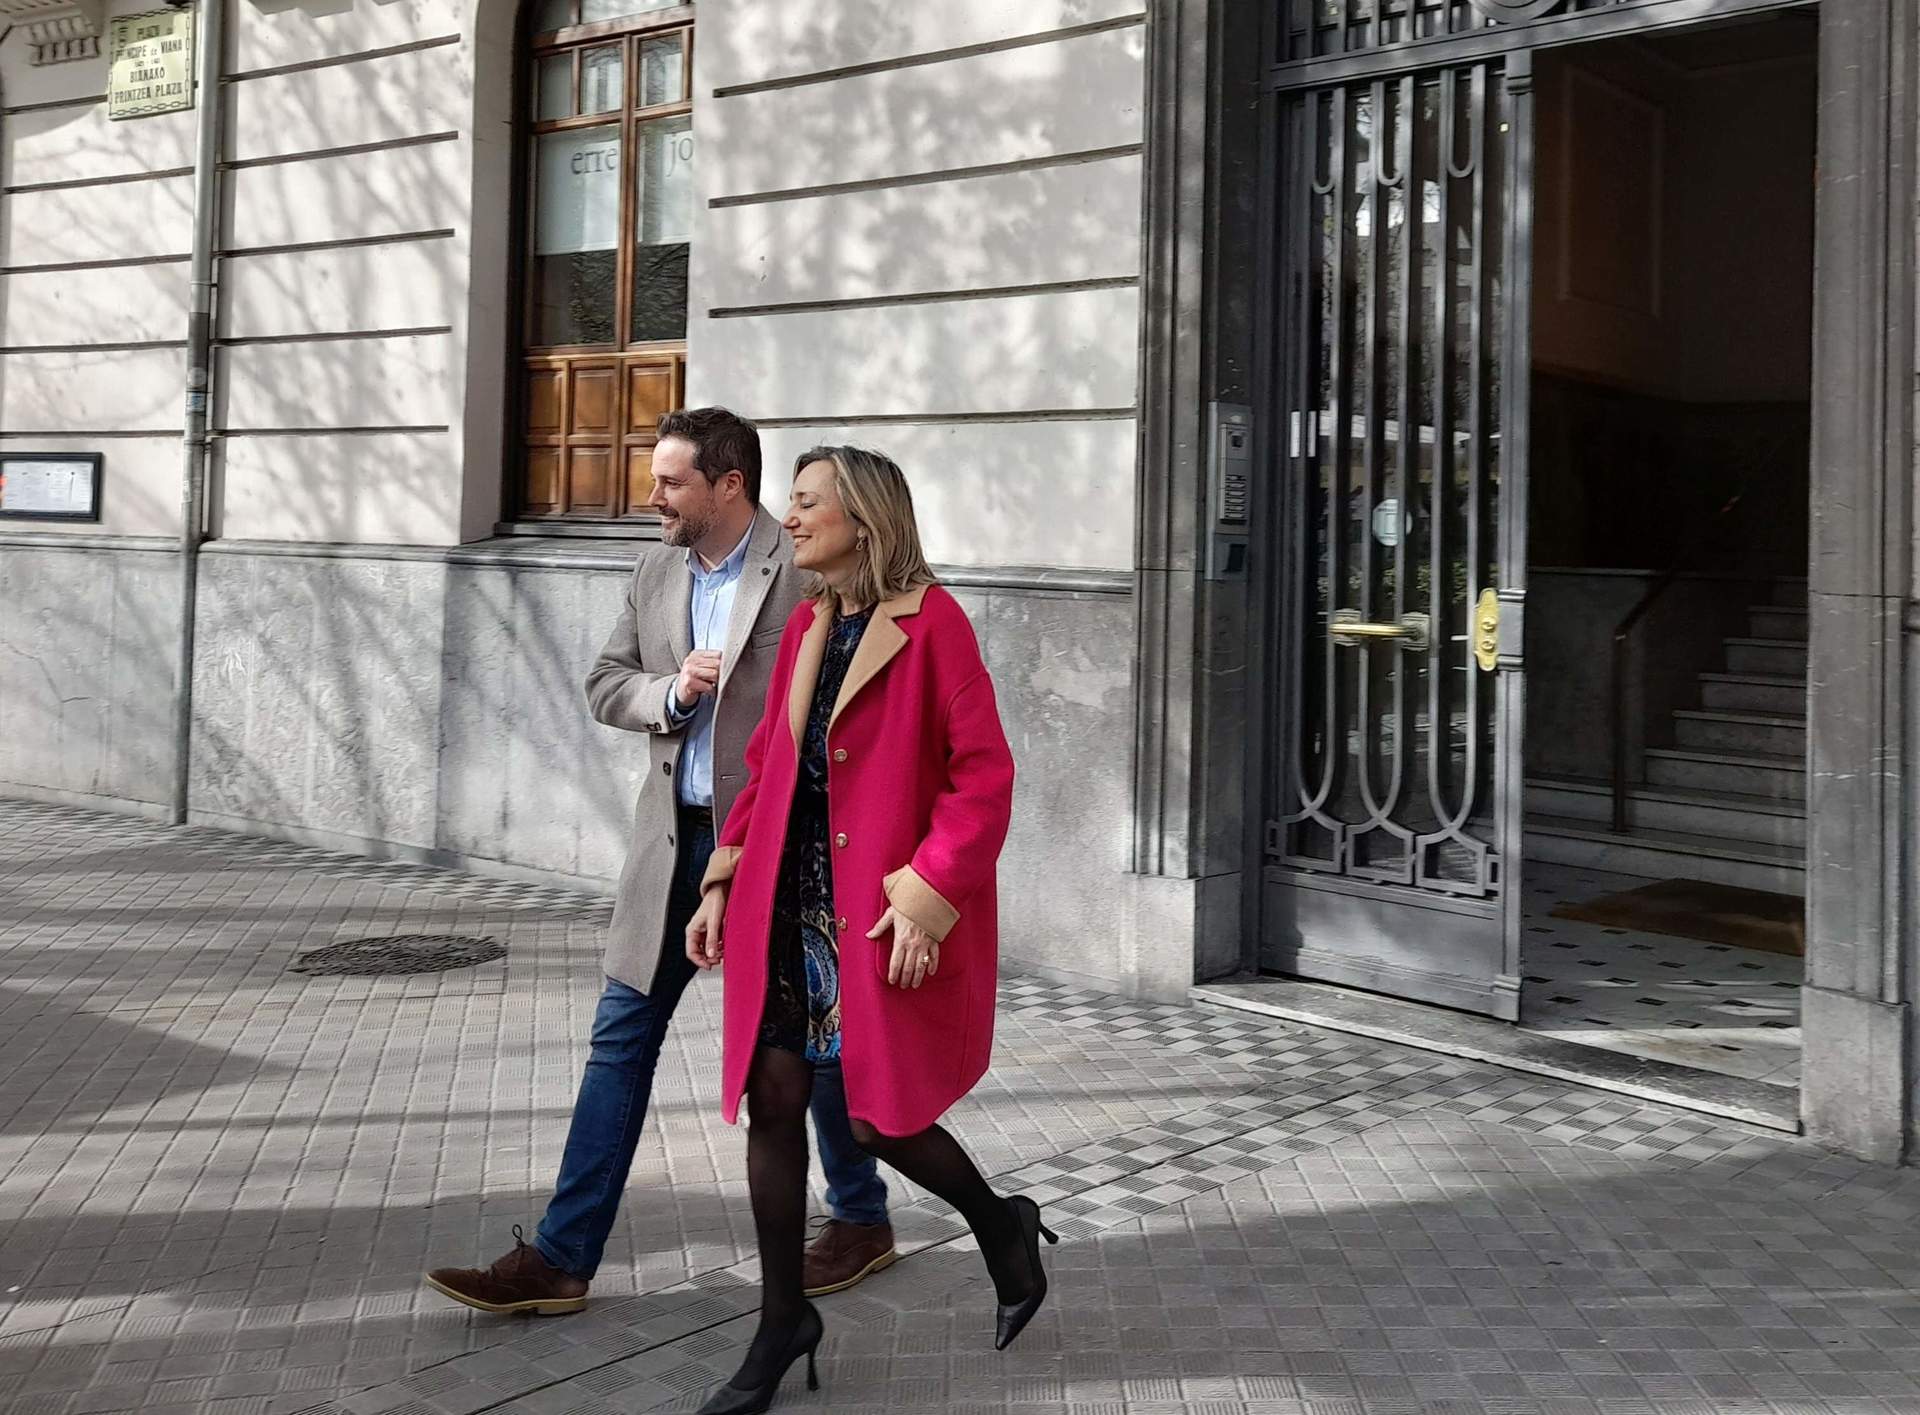 Cristina Ibarrola y el alcalde de Tudela lanzan lista conjunta para liderar UPN: Es un 